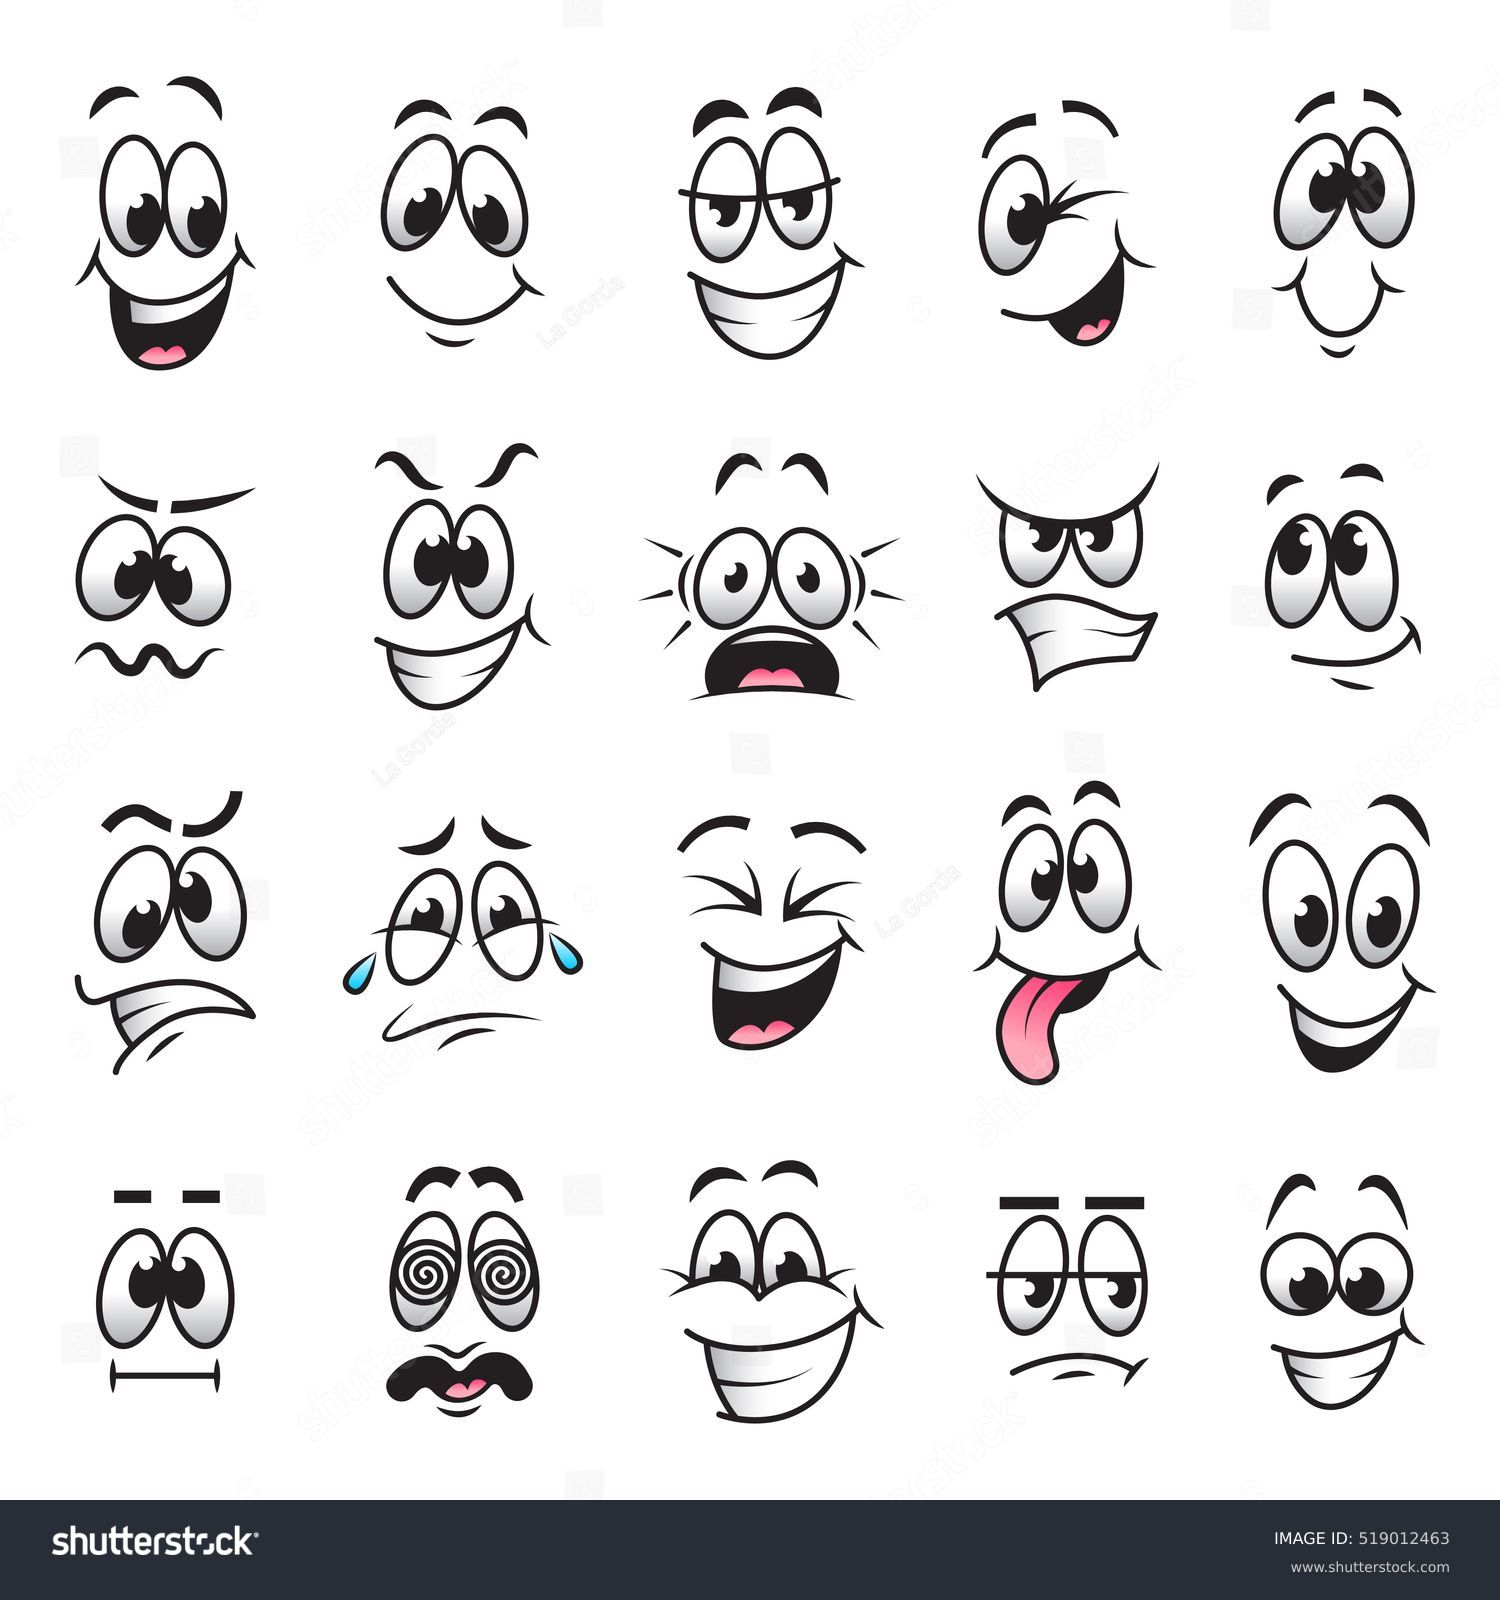 Cartoon faces expressions vector set #519012463